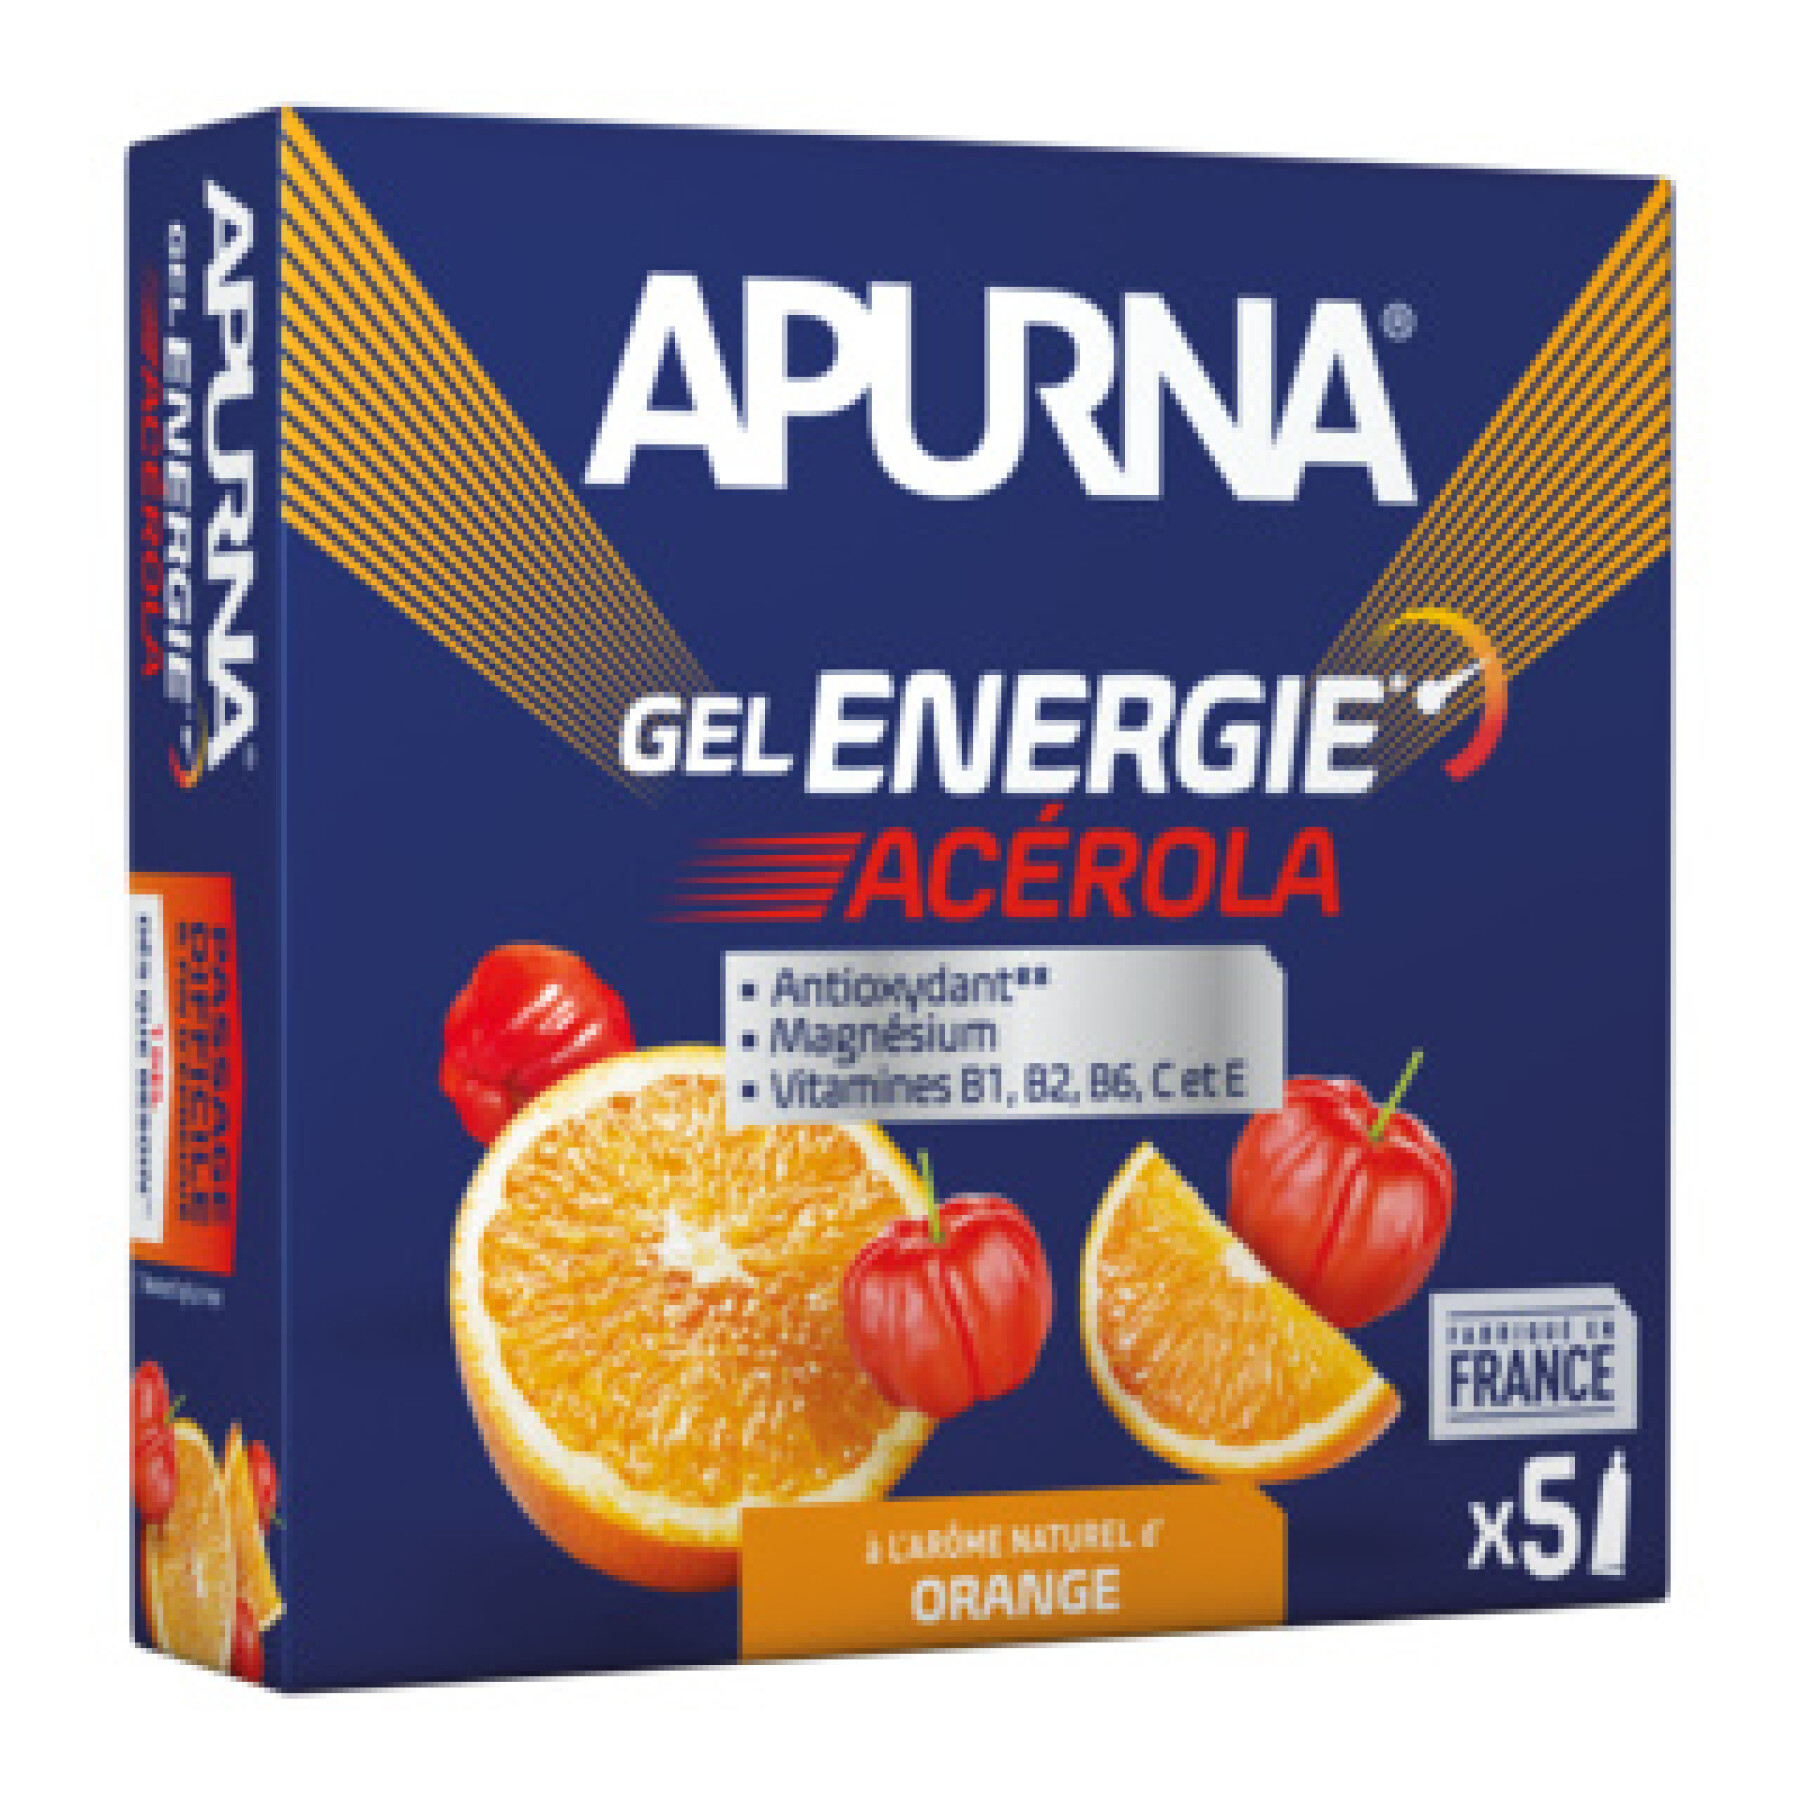 5er Pack Energiegele Acerola Orange Schwierige Passage, davon 1 Gel gratis Apurna